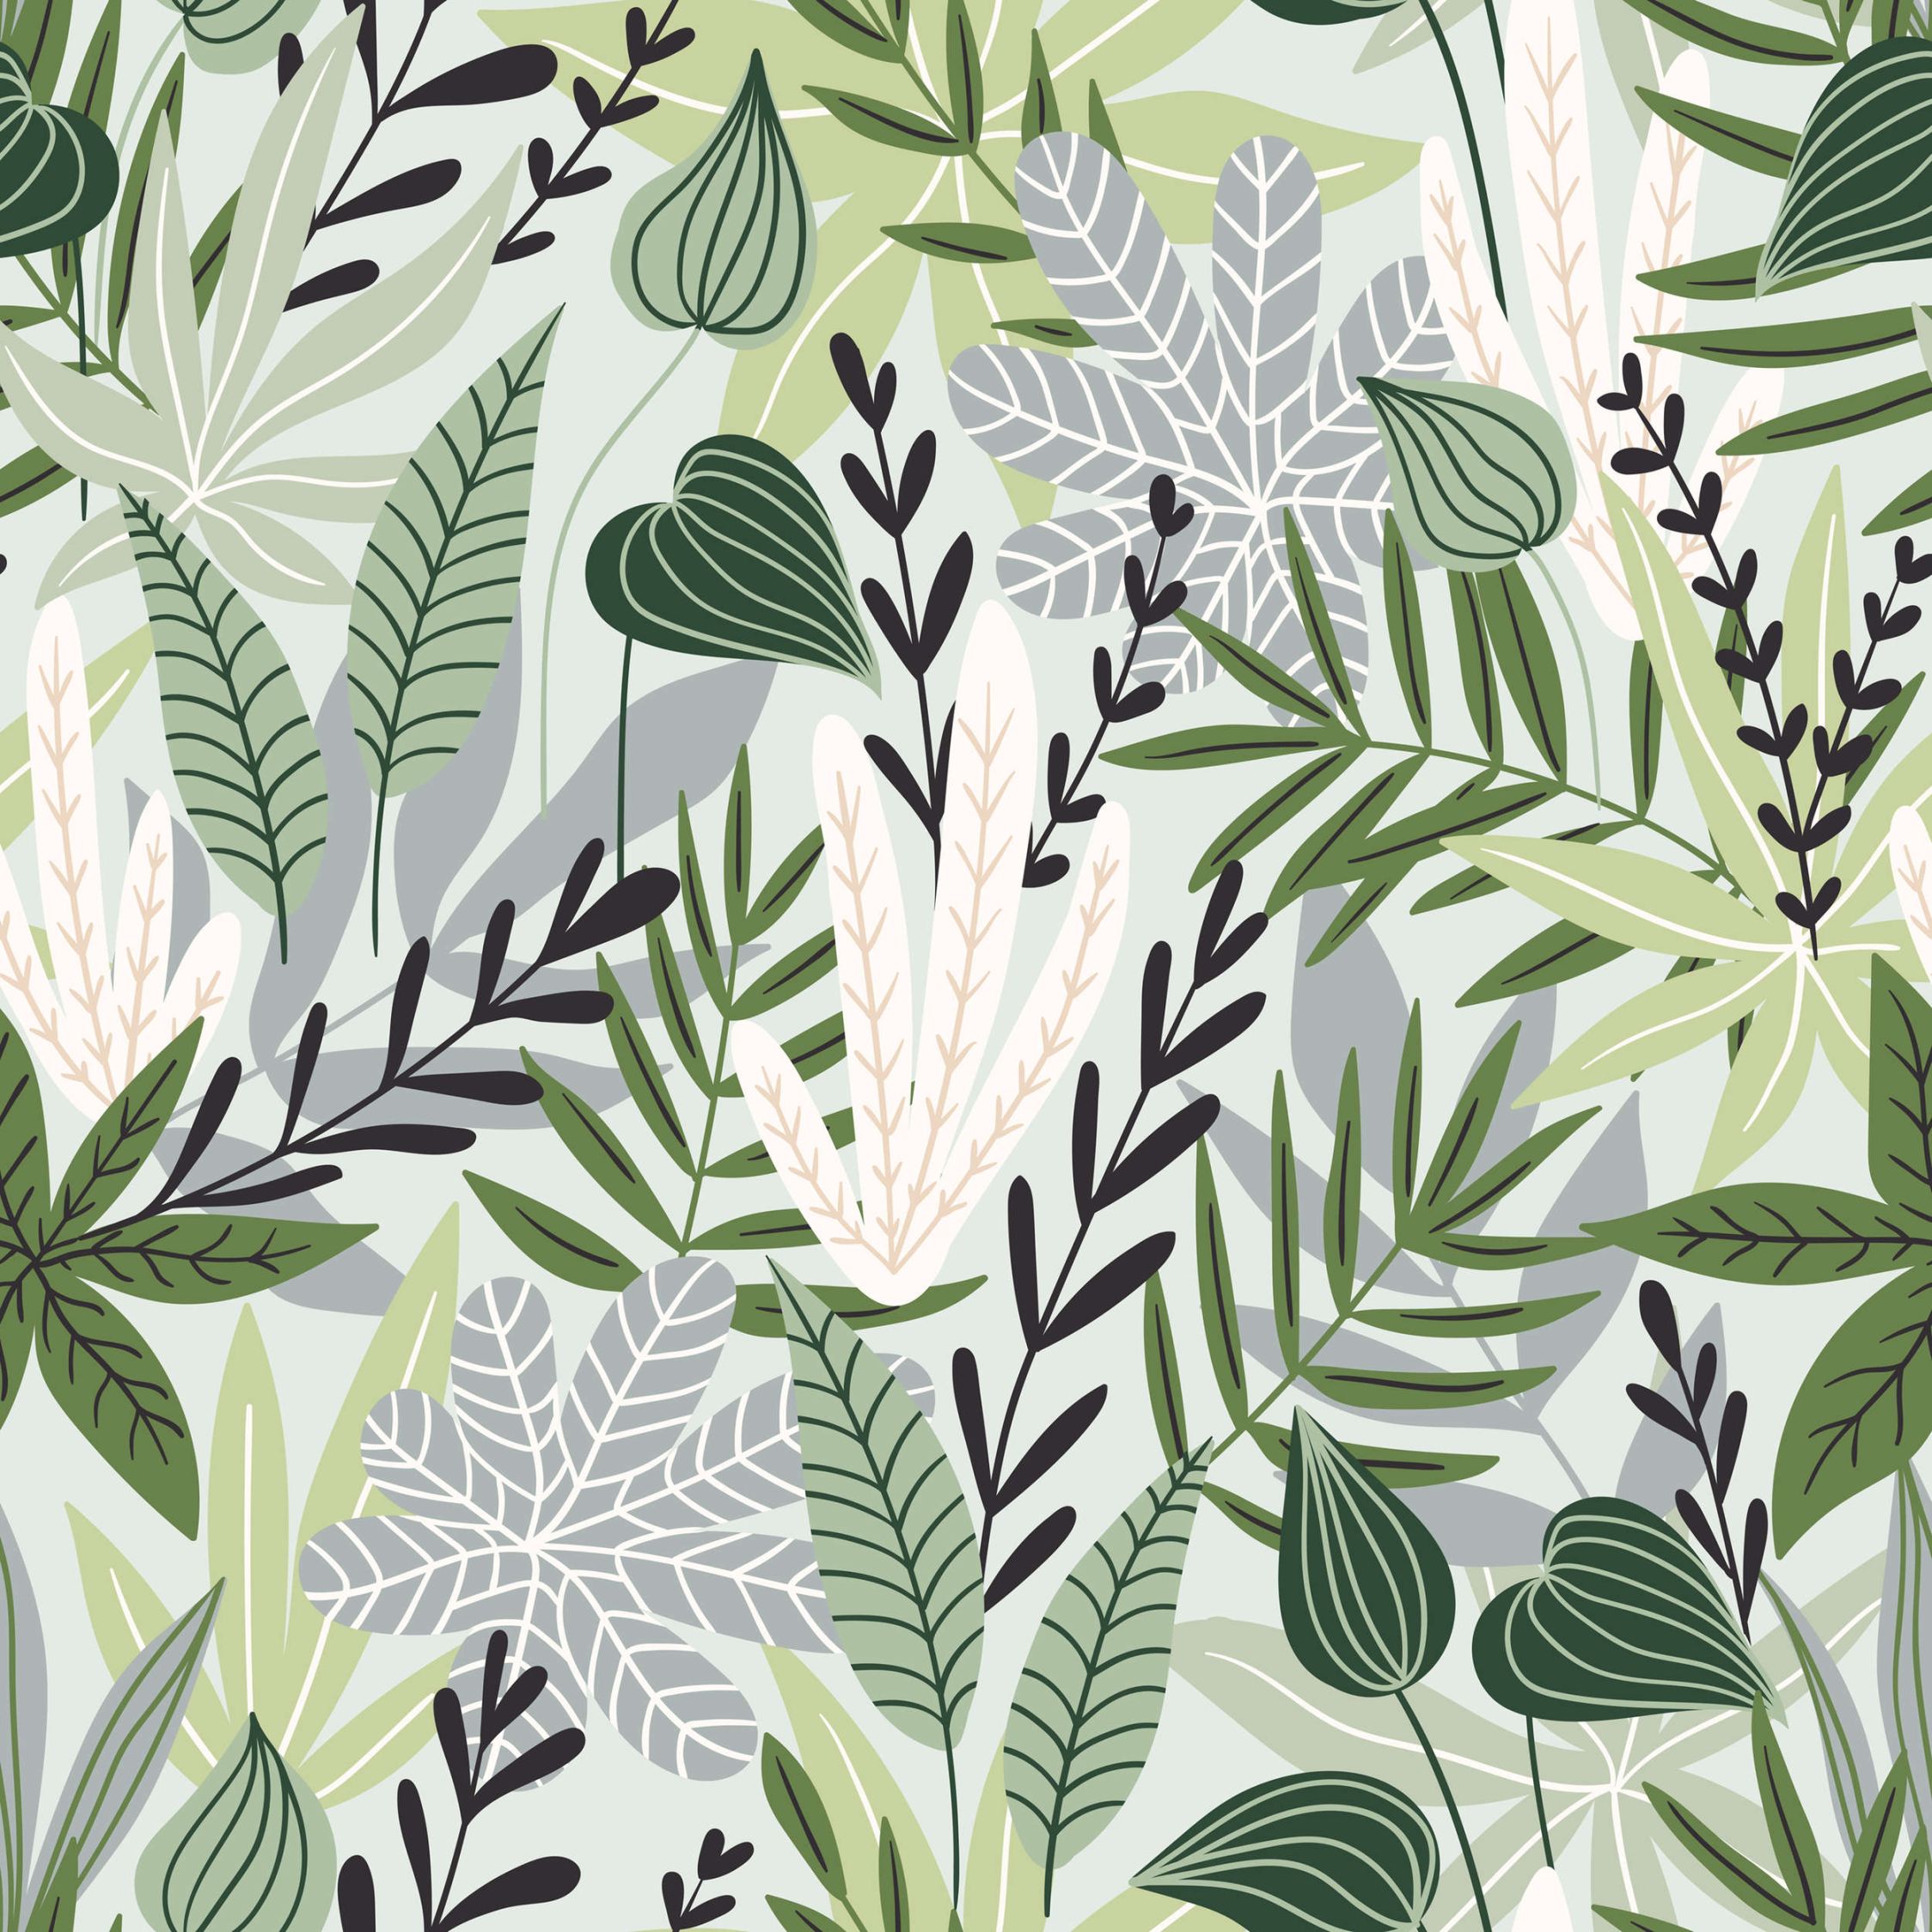             Digital behang Bladeren en grassen in komische stijl - Glad & licht glanzend vlies
        